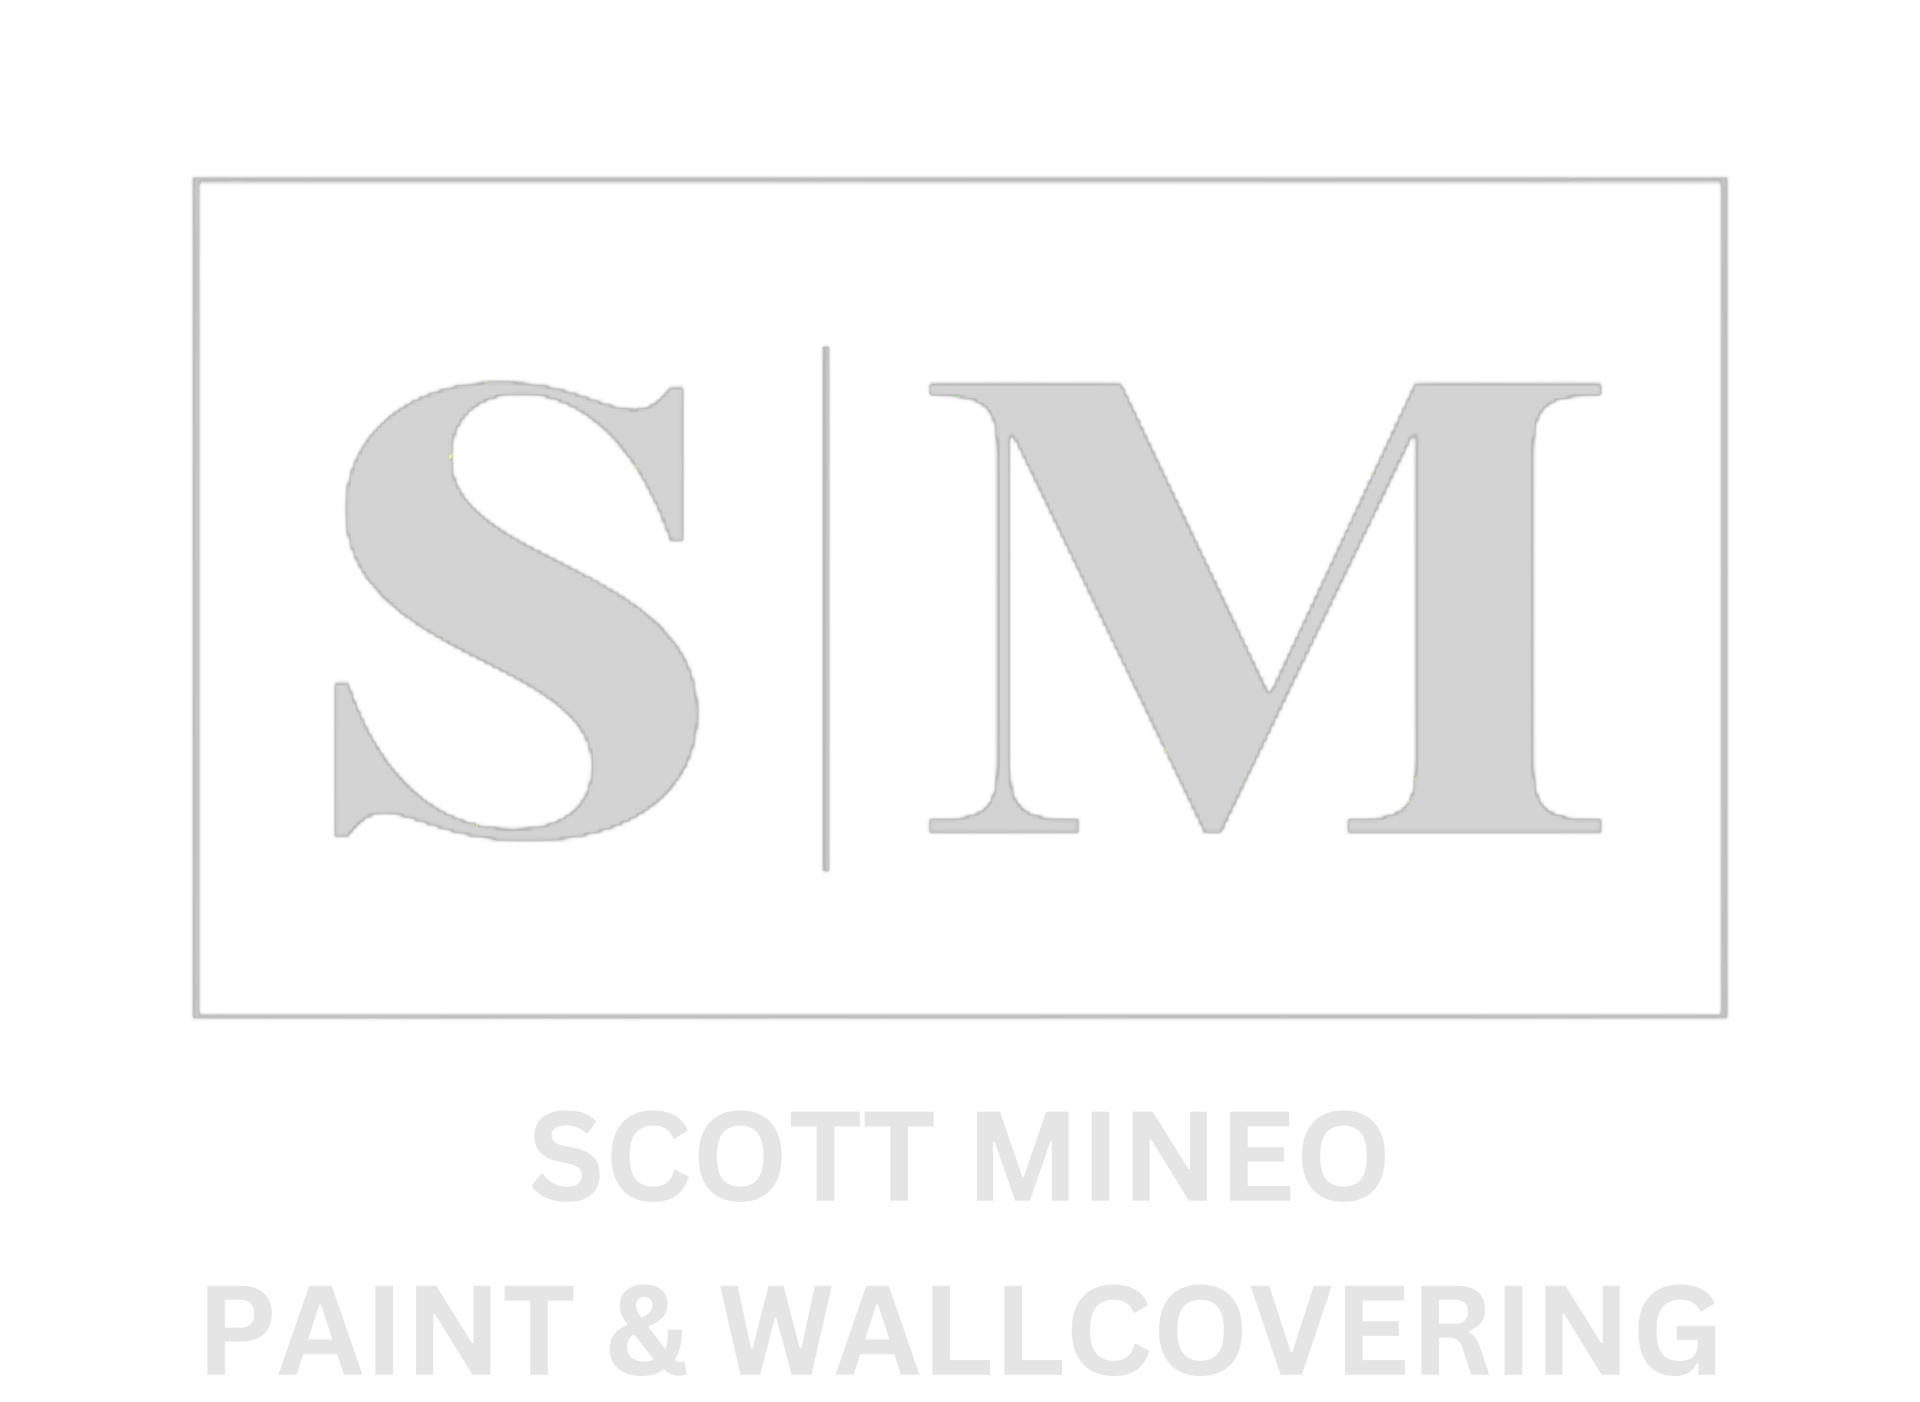 Scott Mineo Paint & Wallcovering logo